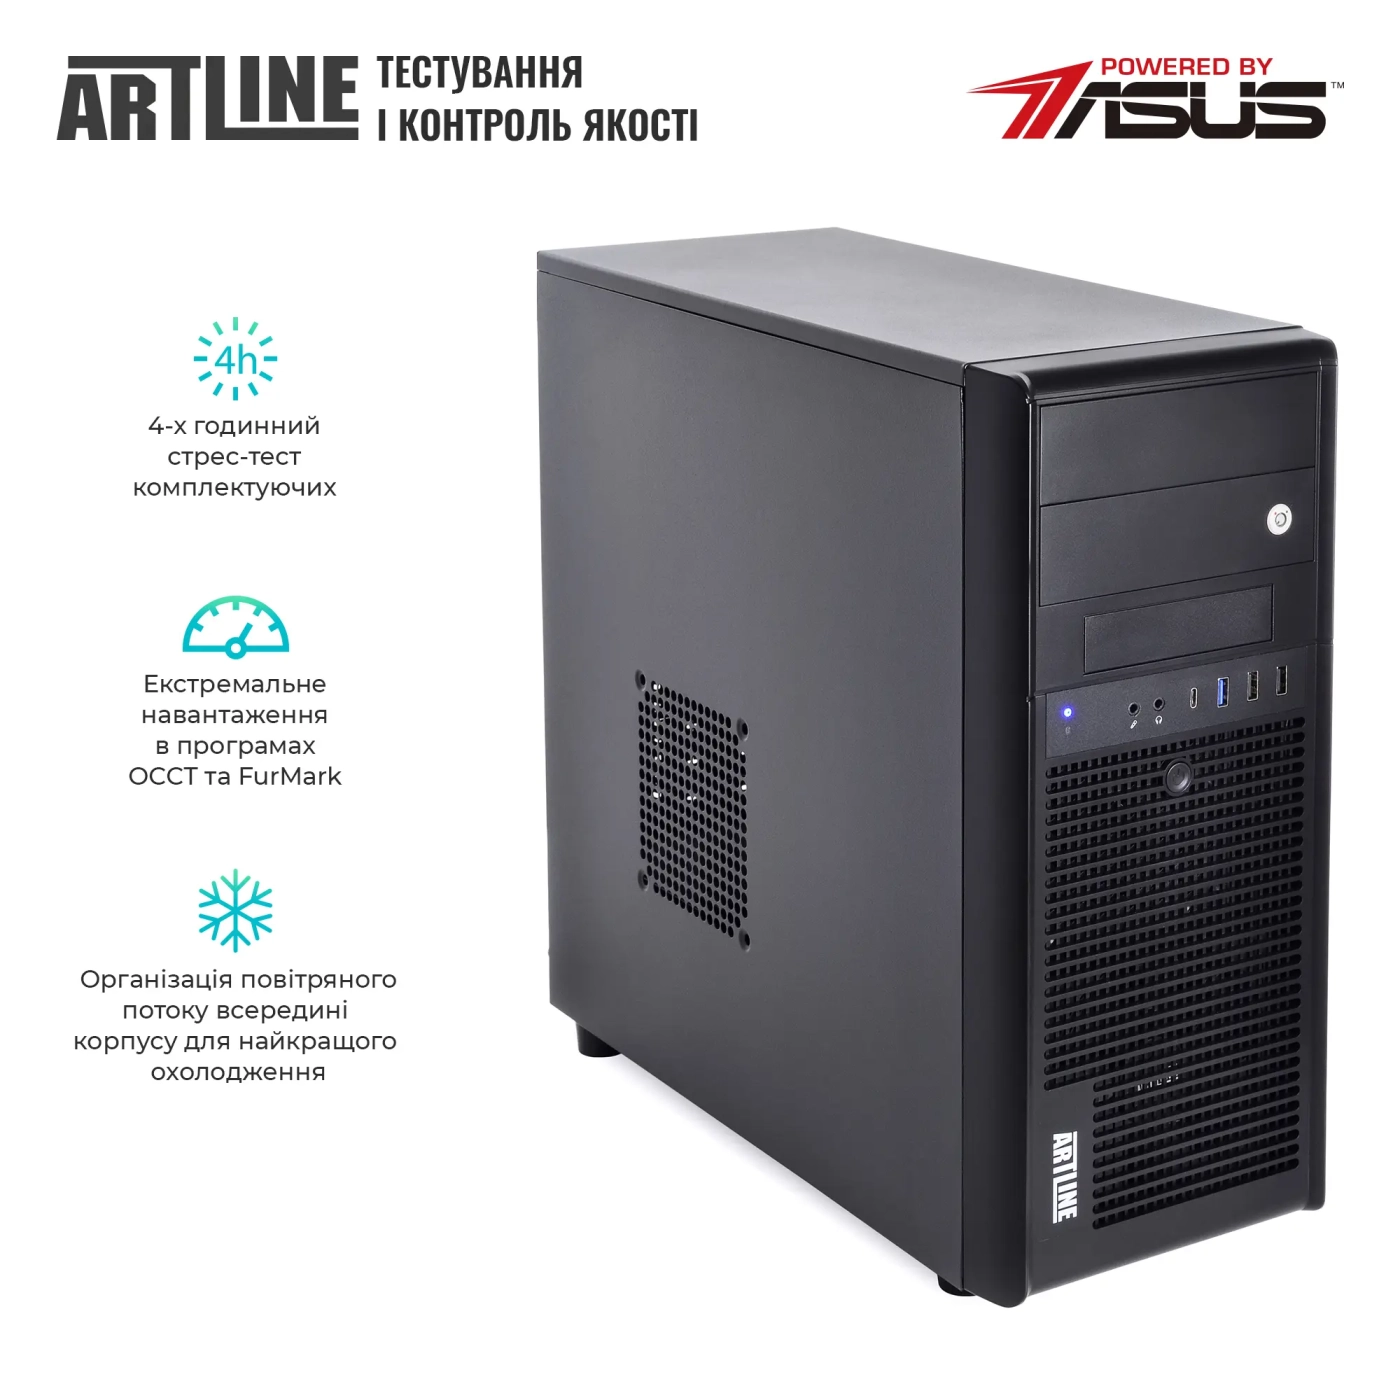 Купить Сервер ARTLINE Business T35v19 - фото 7